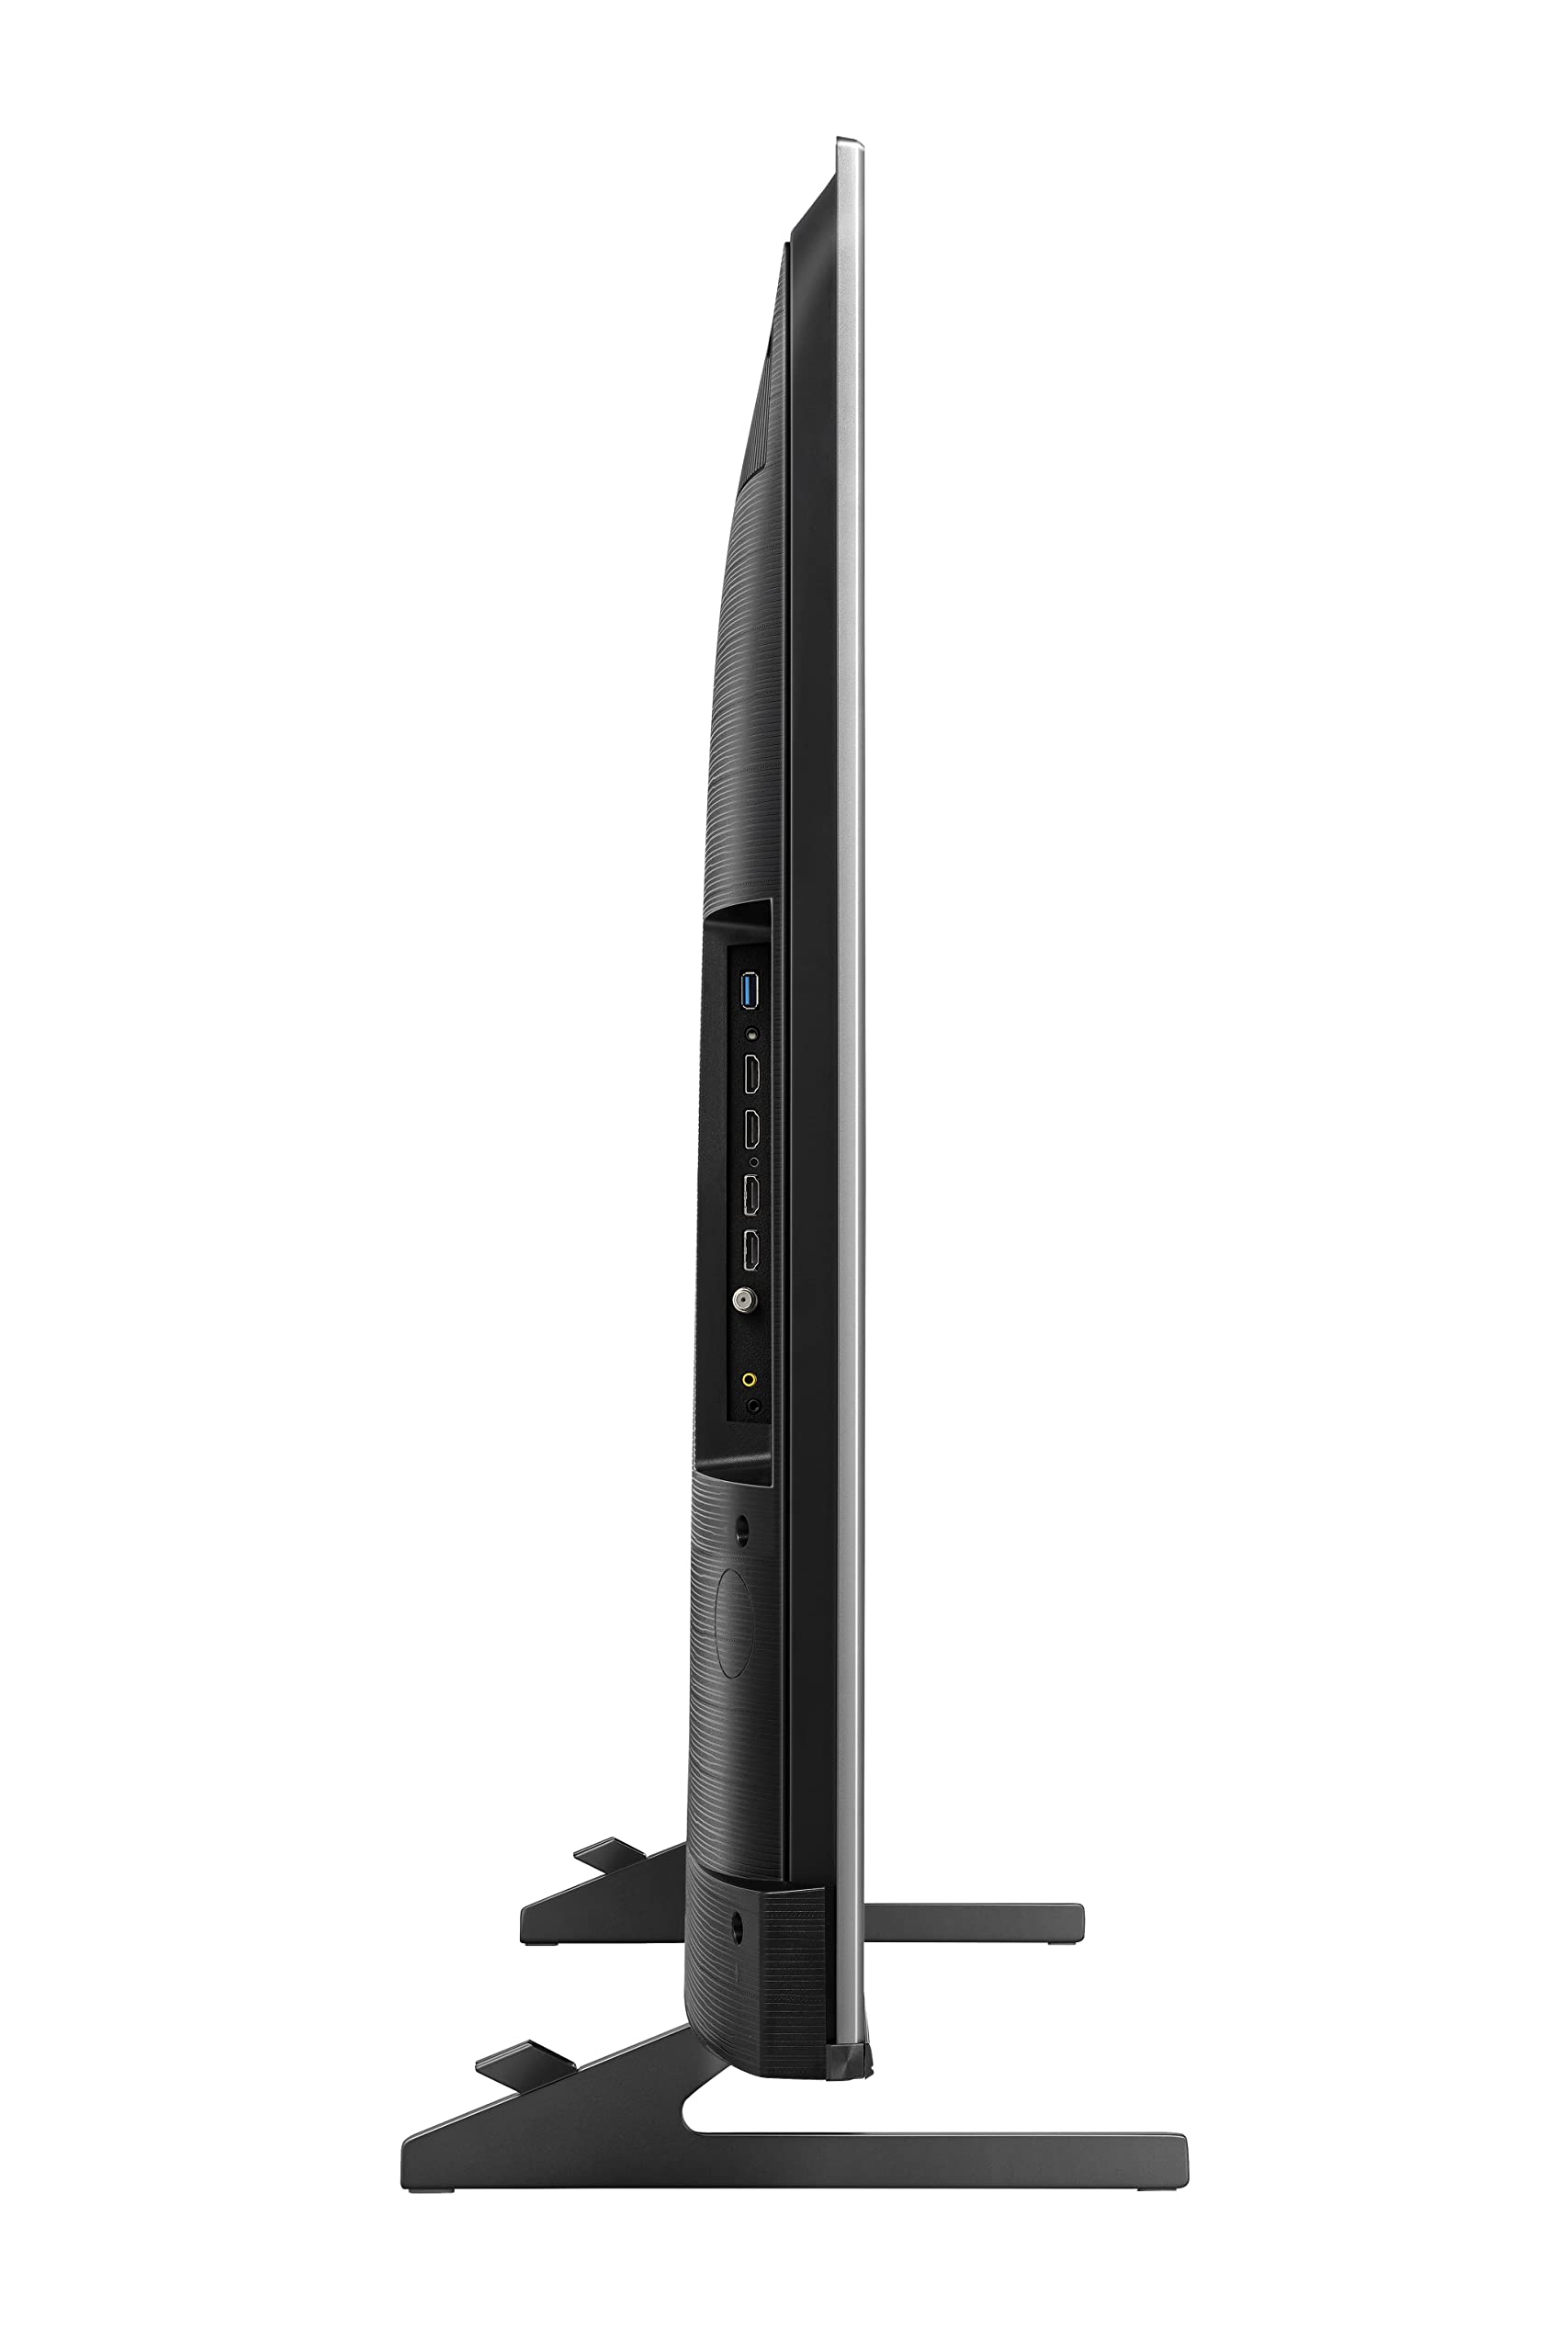 Hisense 65U8H QLED U8H Series Quantum 4K ULED Mini-LED 65-Inch Class Google Smart TV with Alexa Compatibility, Quantum Dot, 1500-nit HDR10+, Black